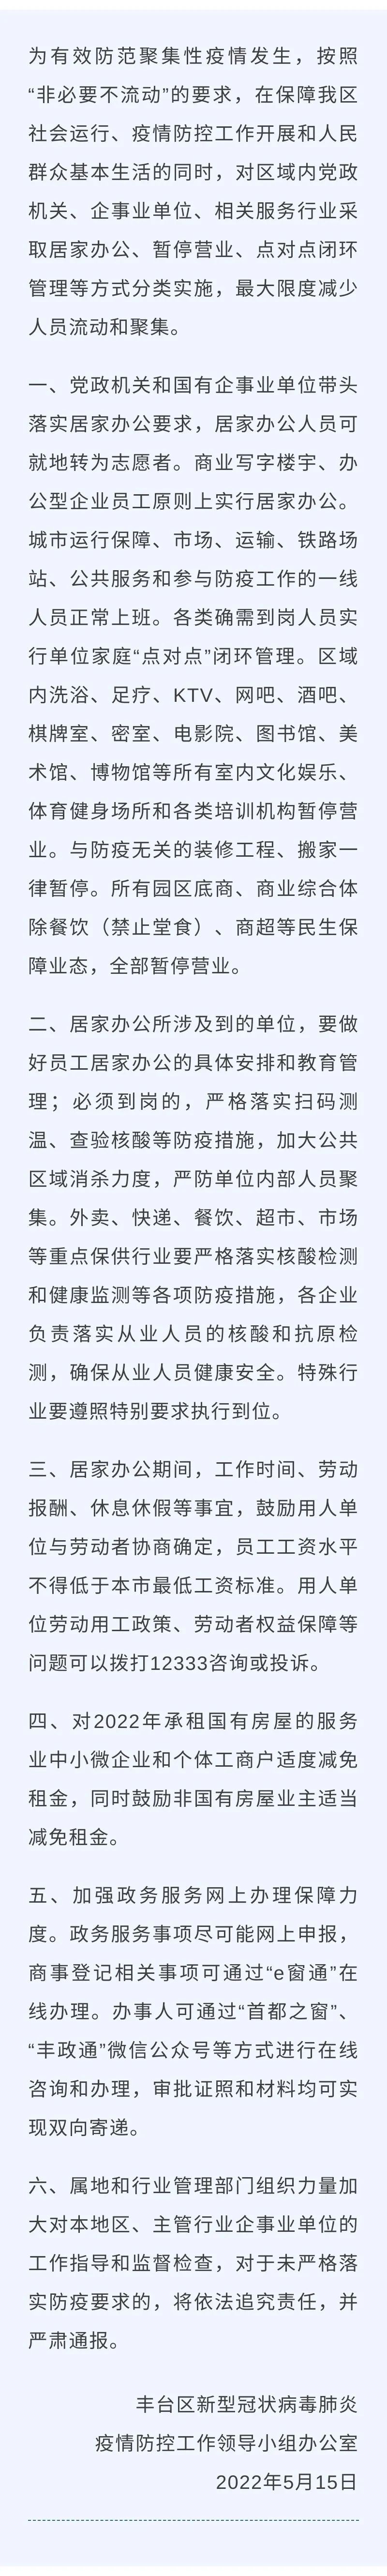 北京丰台：进一步加强疫情防控措施，采取居家办公等措施周渝民华航空难